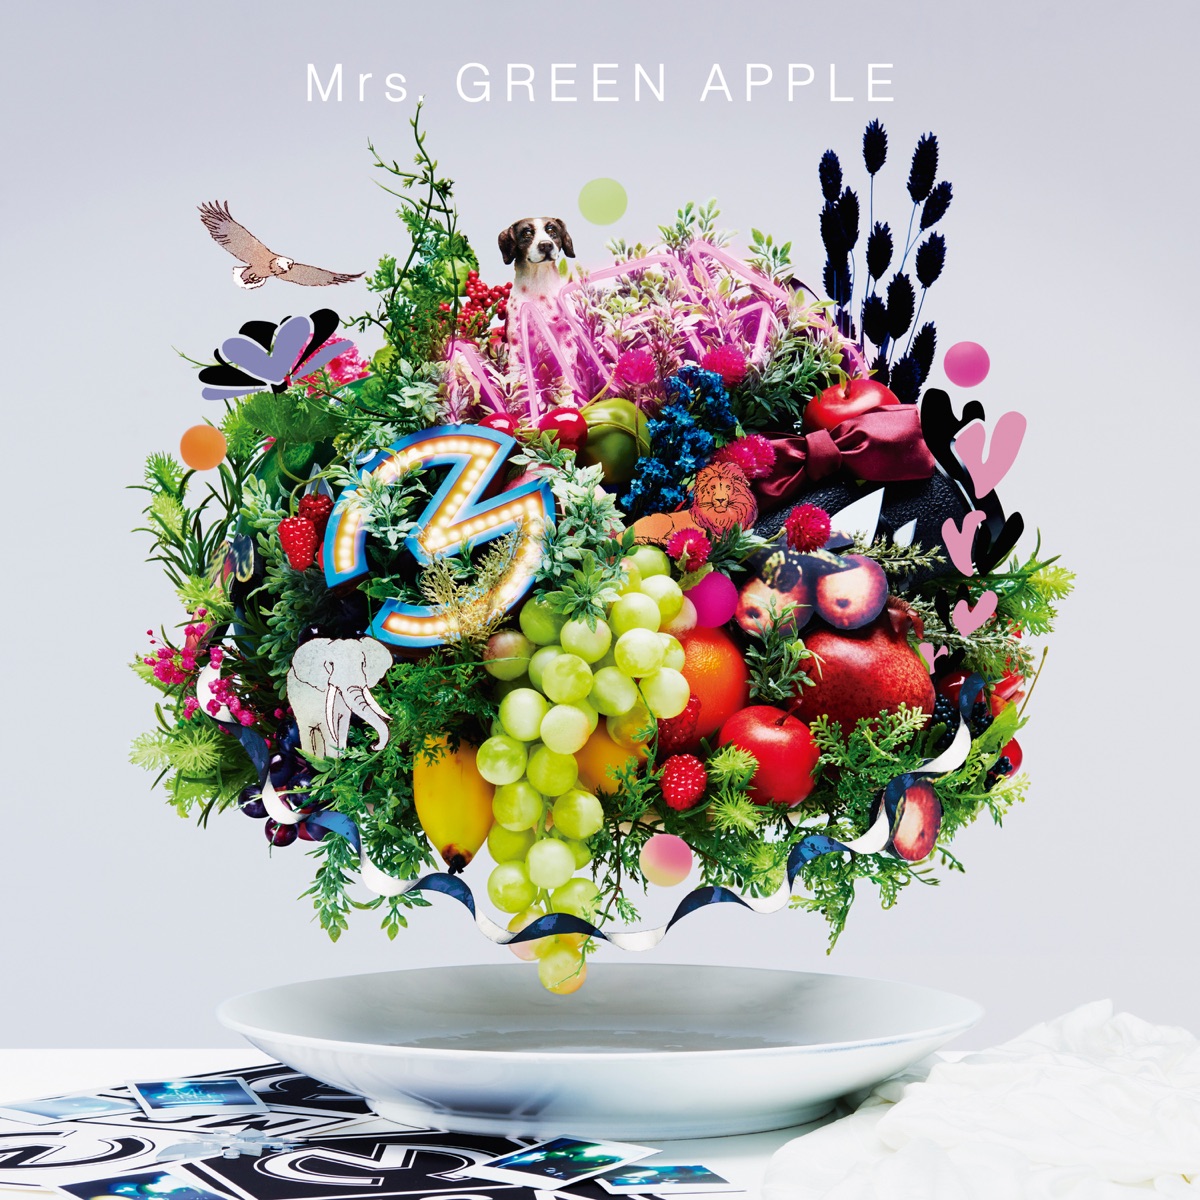 『Mrs. GREEN APPLE - On My MiND』収録の『On My MiND』ジャケット